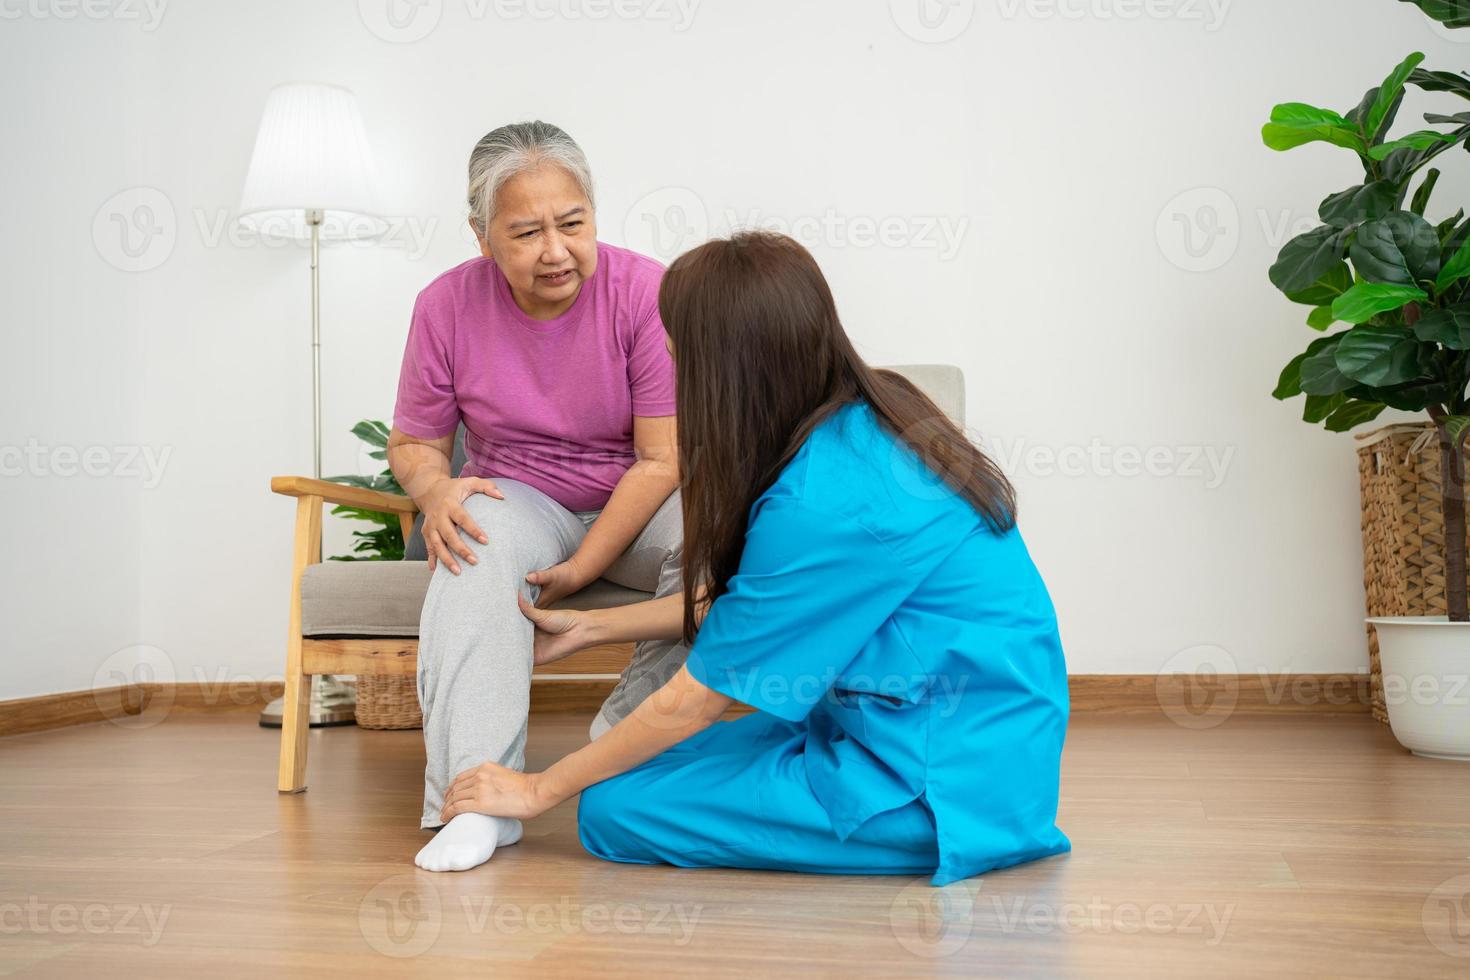 fysiotherapeut dokter of verzorger helpen senior ouder vrouw uitrekken zijn hamstring en aan het doen dij of been revalidatie in oefening kamer, artrose van de knie en verzorger concept foto